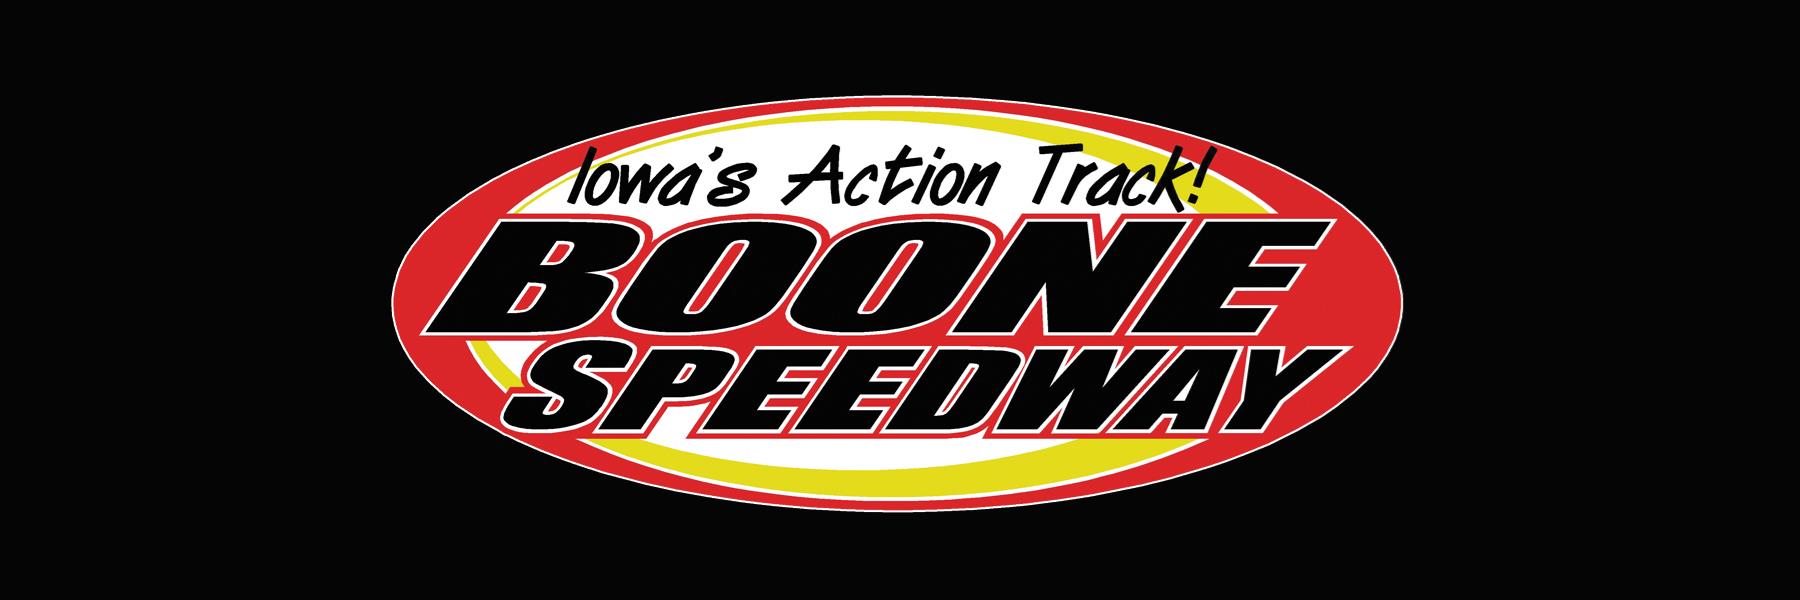 5/12/2018 - Boone Speedway